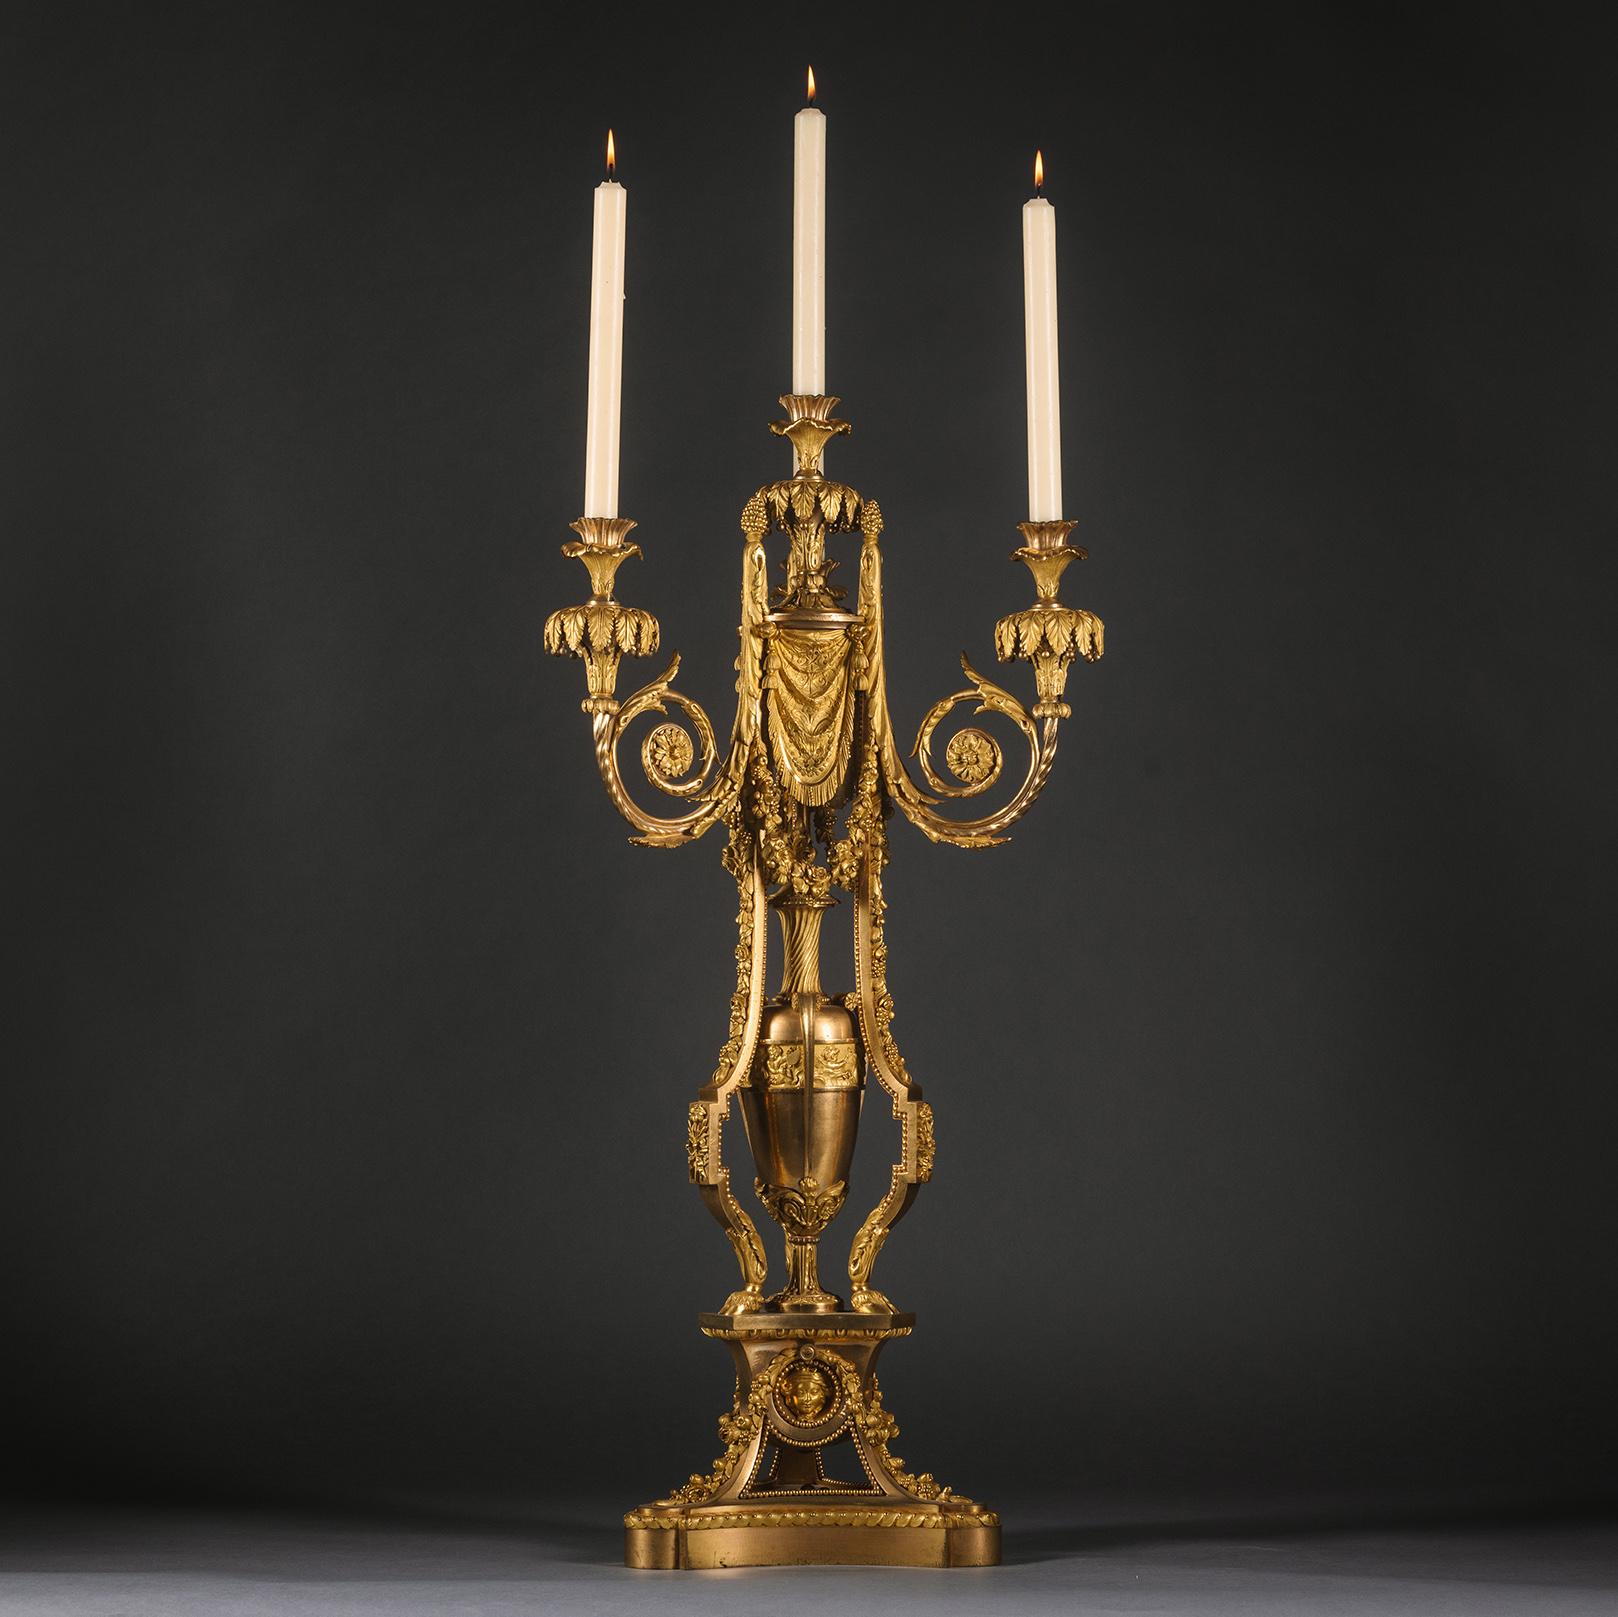 Großer und beeindruckender vierflammiger Kandelaber aus vergoldeter Bronze im Louis XVI-Stil, nach einem Pierre Gouthière zugeschriebenen Modell.

Fein gegossen und vergoldet, mit einem zentralen Stiel, der drei akanthusumrankte, verschlungene Äste